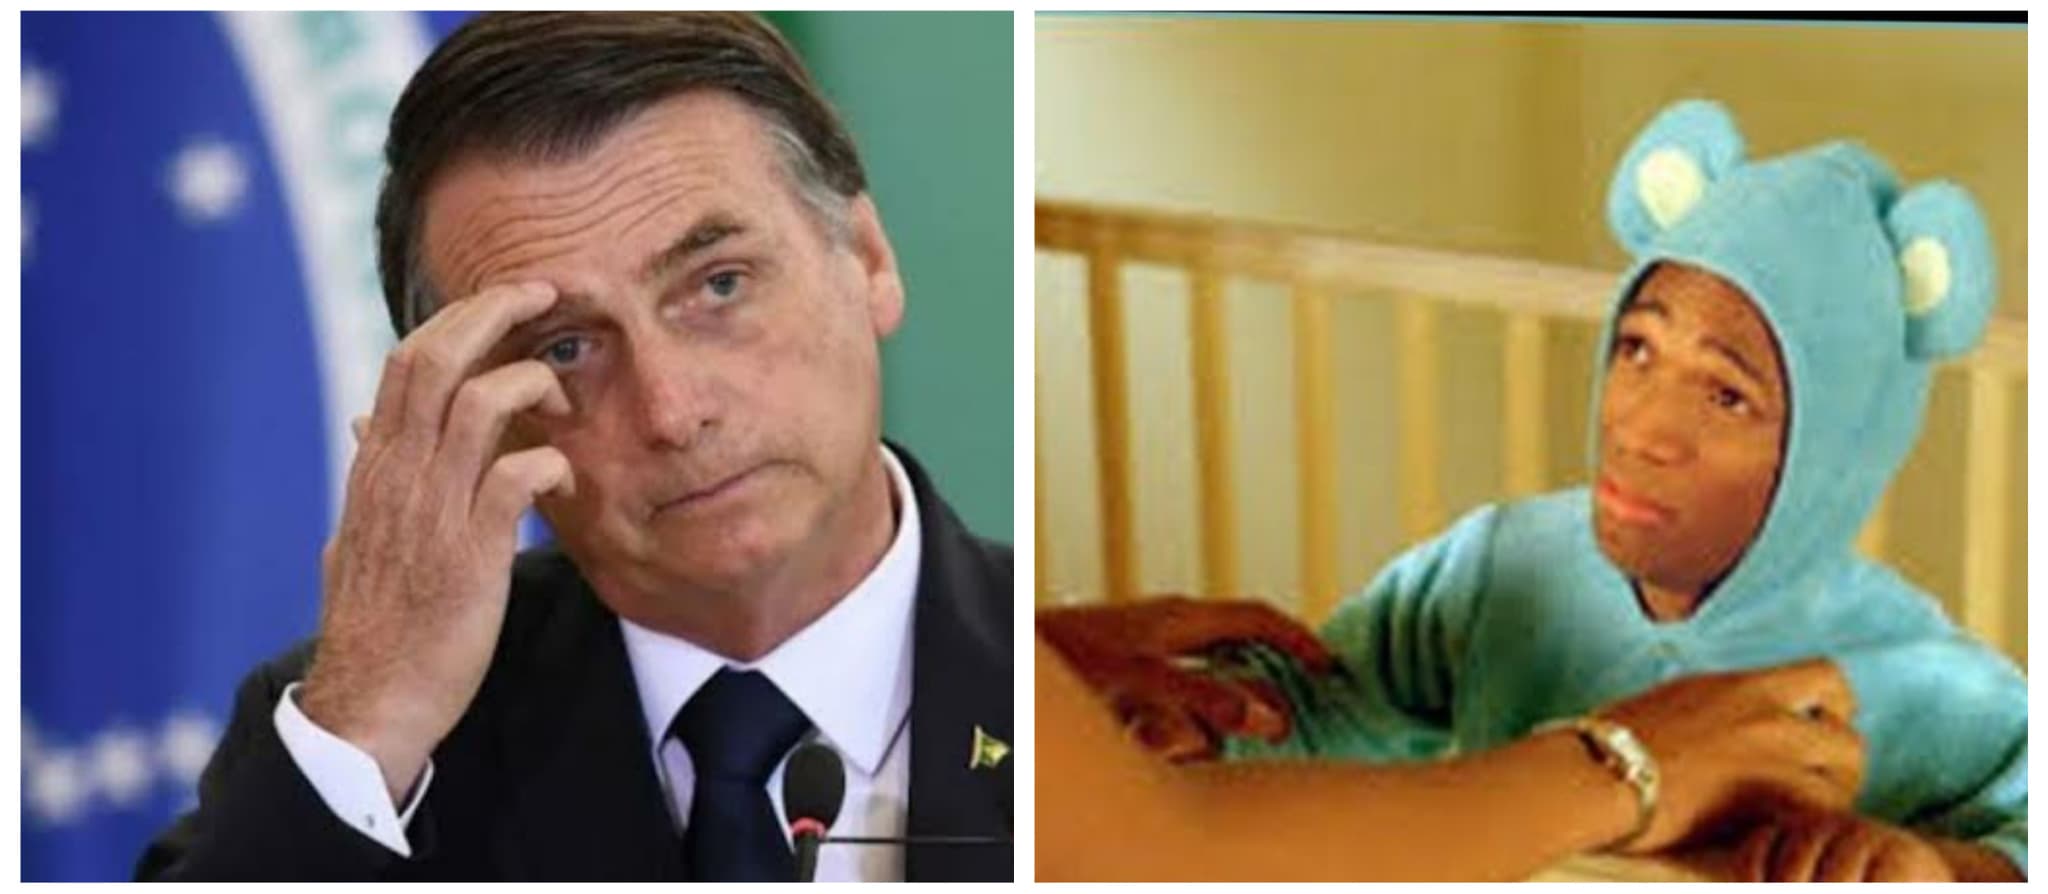 Jair Bolsonaro, cargar, Brasil, enano, menor de edad, video viral, burlas